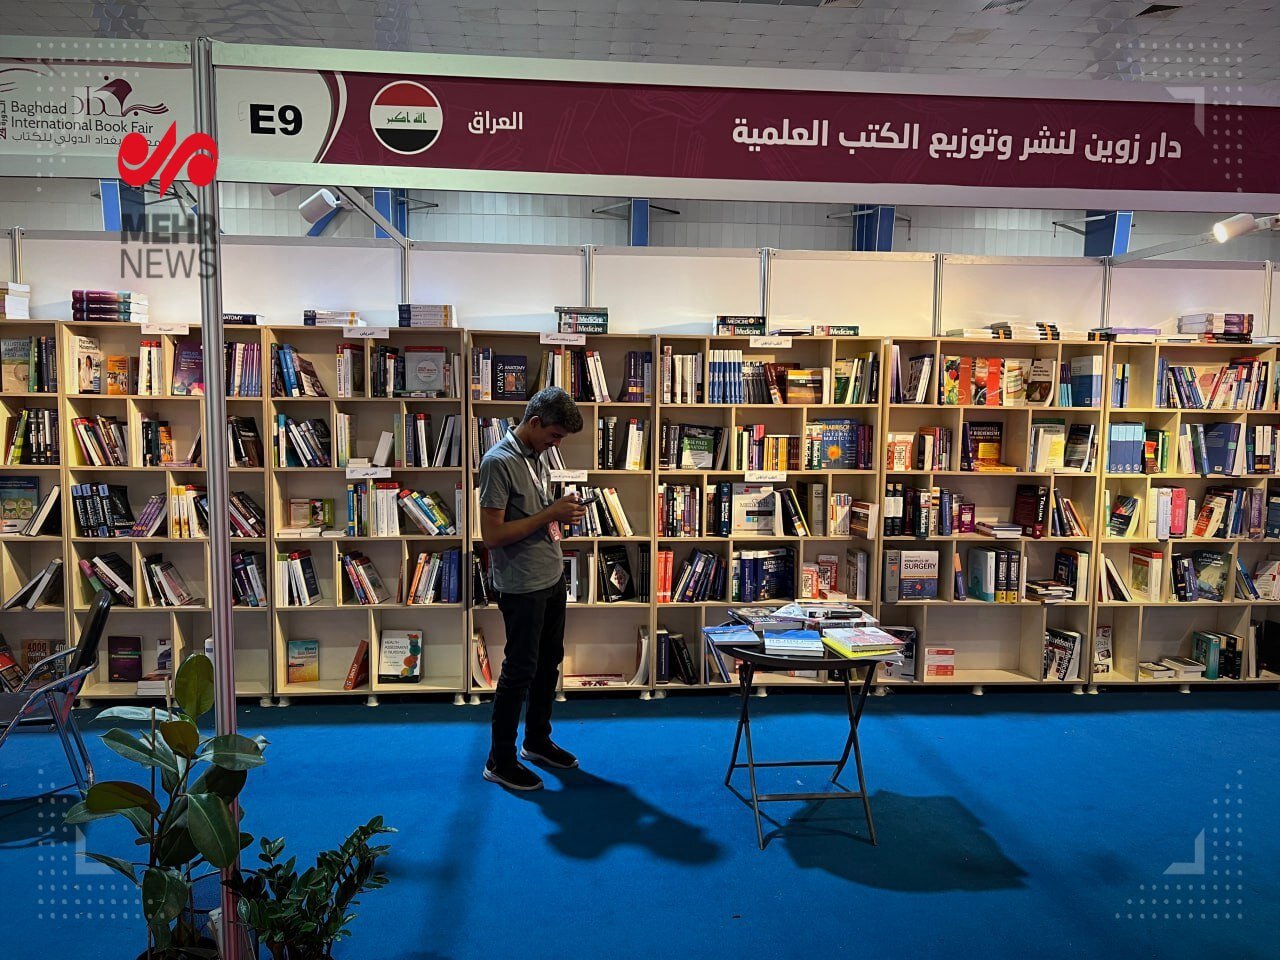 در نمایشگاه بغداد کدام کتاب های ایرانی مورد استقبال قرار گرفتند؟